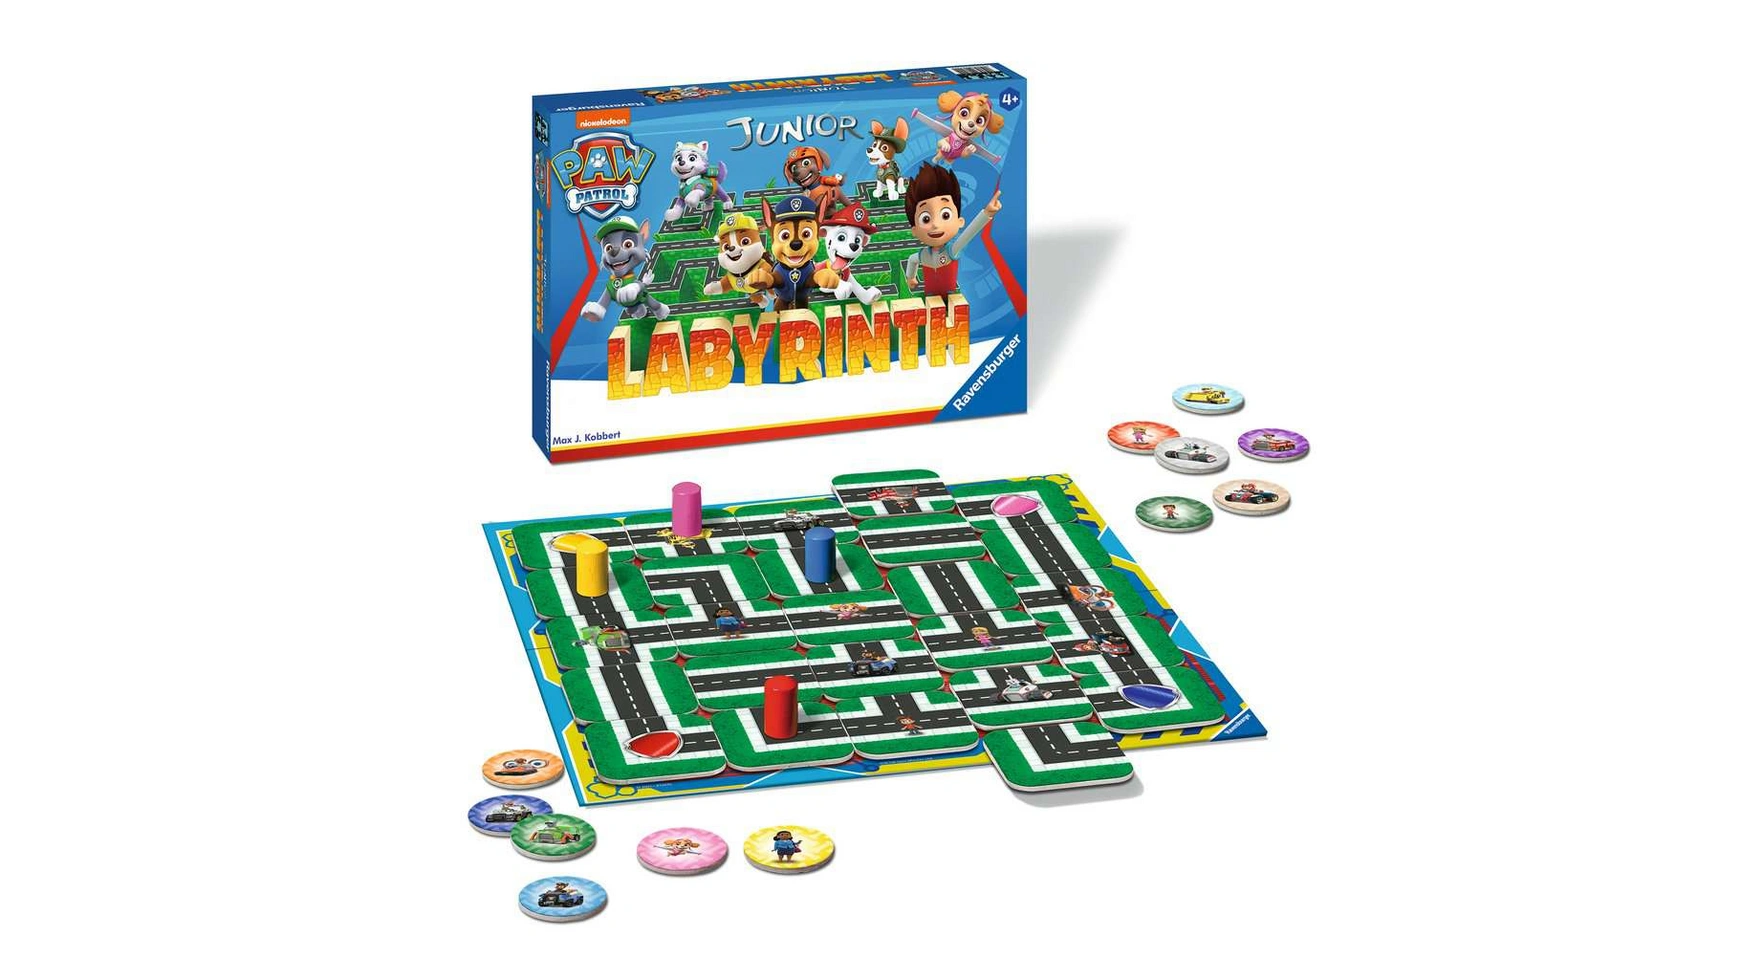 Ravensburger Spiele Paw Patrol Junior Labyrinth, известная настольная игра от Ravensburger в детской версии настольная игра сказочный патруль огненные замки звезда